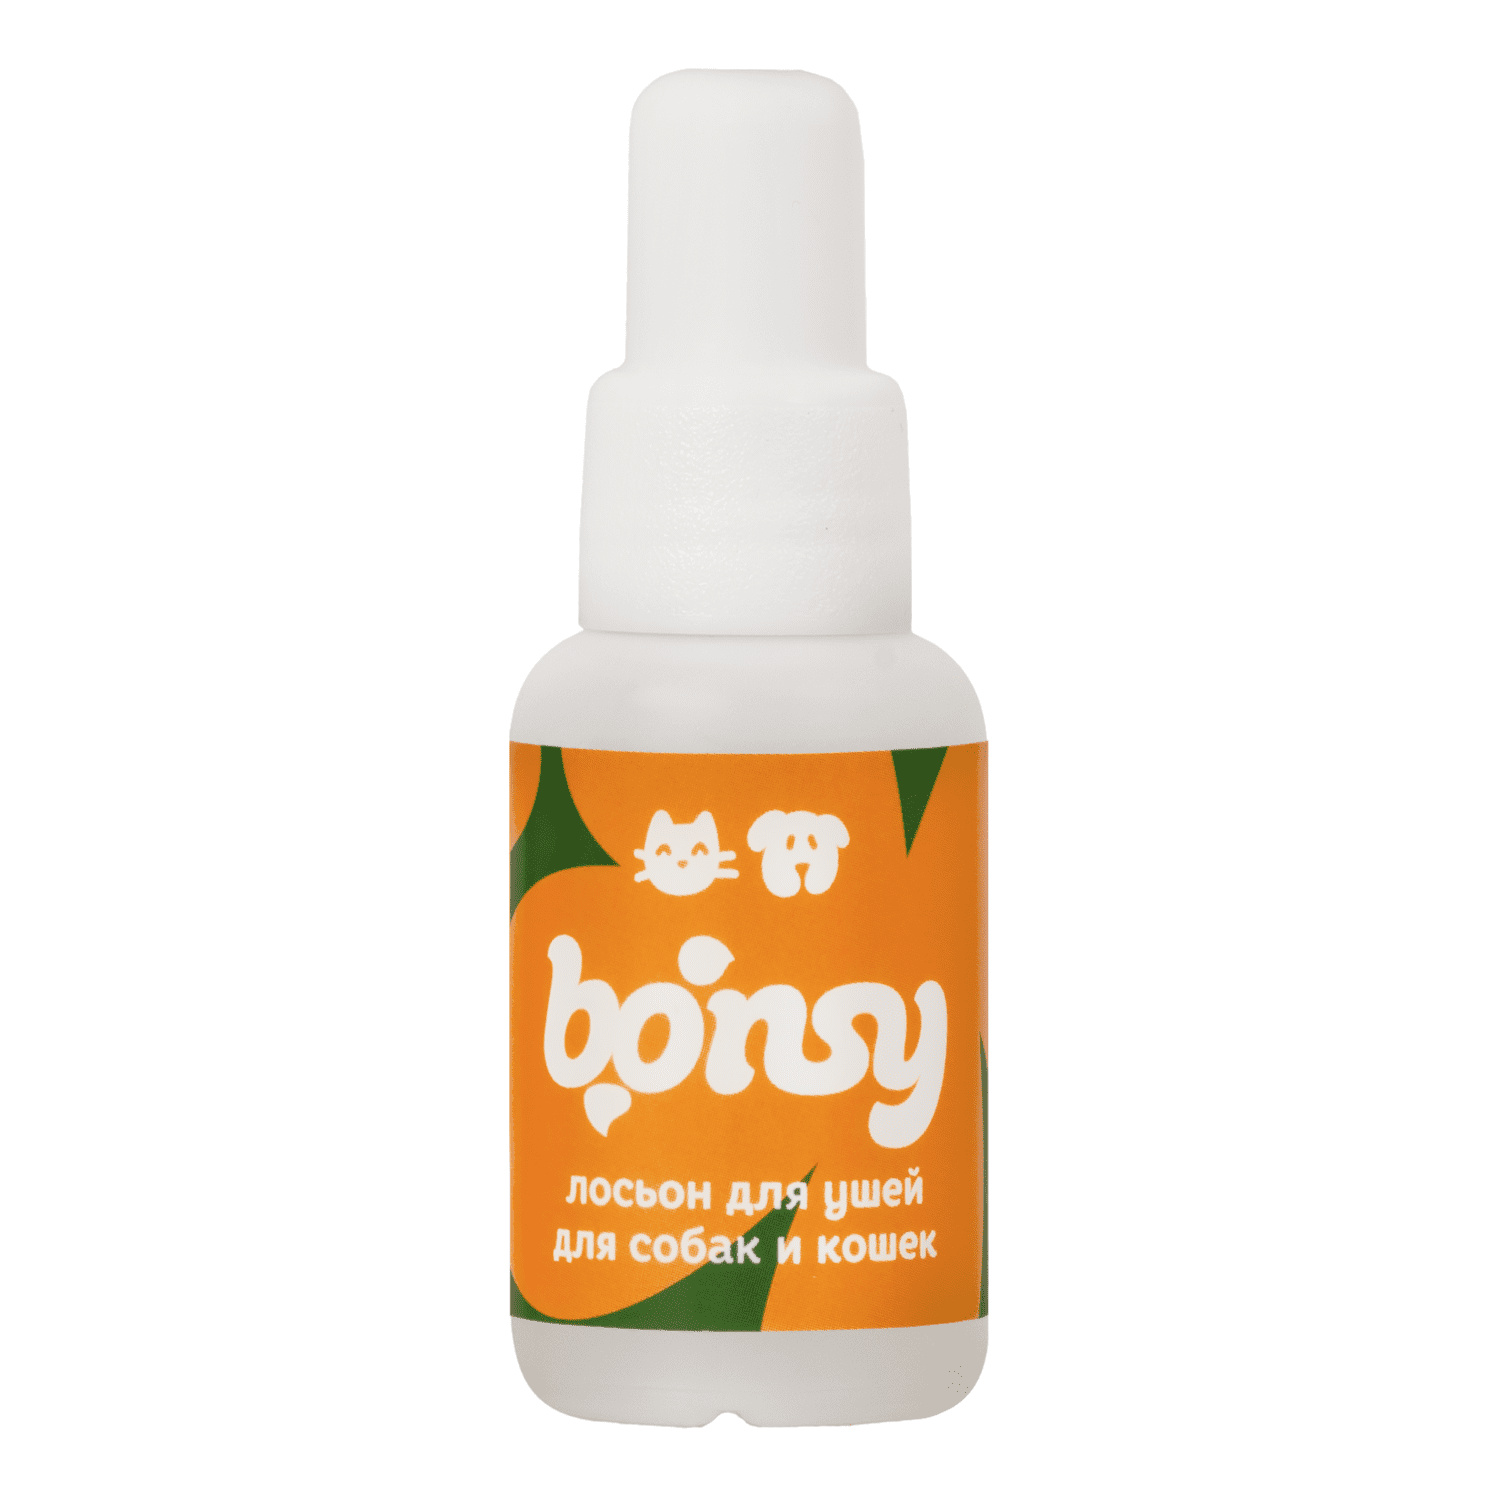 Bonsy Bonsy лосьон для очистки ушей кошек и собак (30 г) bonsy bonsy лосьон для очистки ушей кошек и собак 30 г